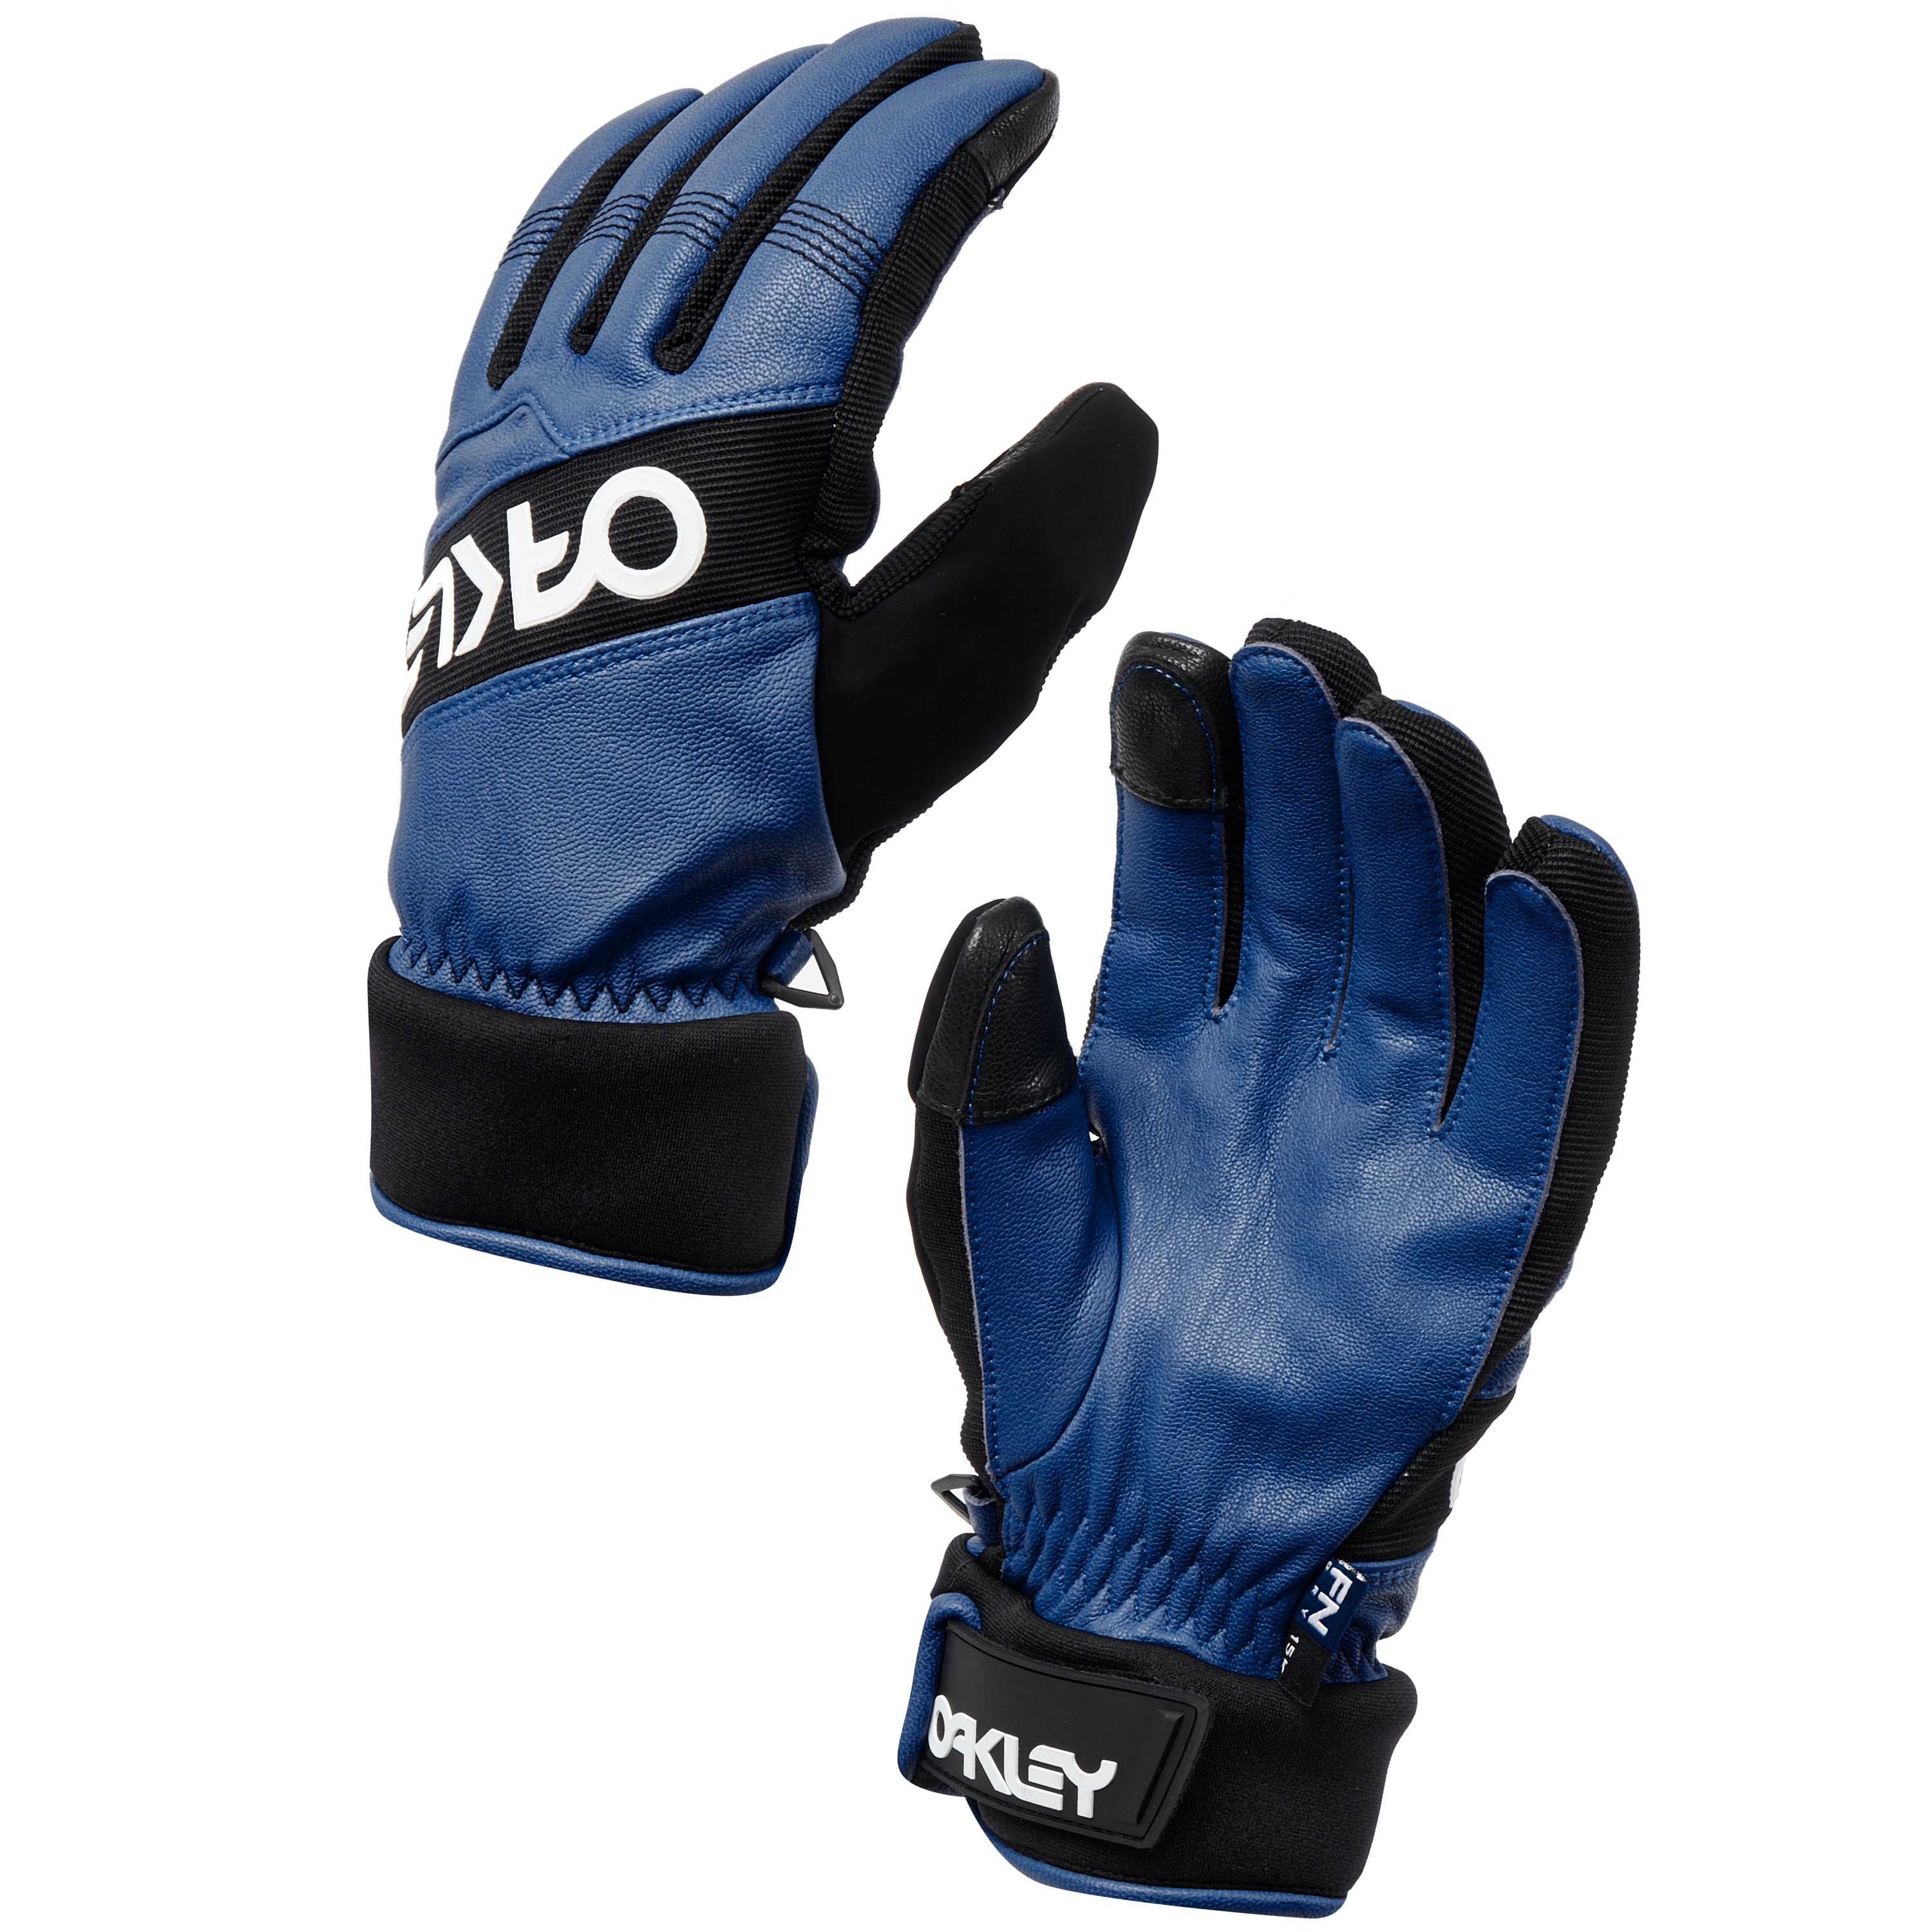 Oakley Factory Winter Glove 2.0 - Dark 